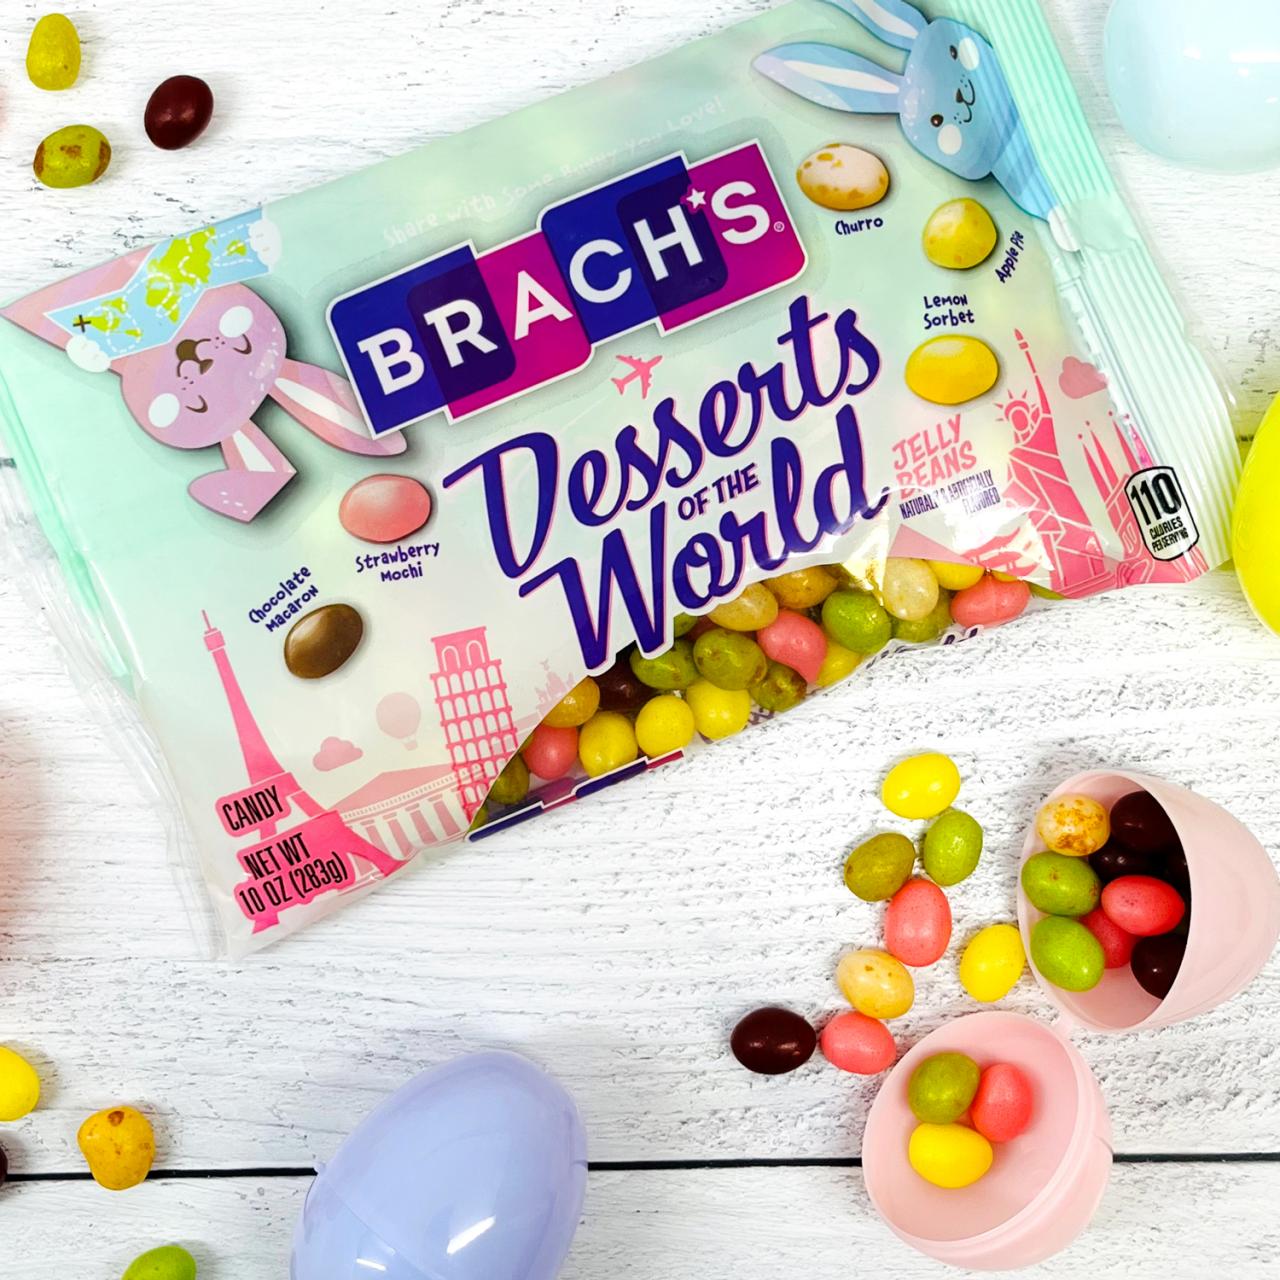 Brach's Spiced Jelly Beans Bird Eggs Easter Candy, 7oz 